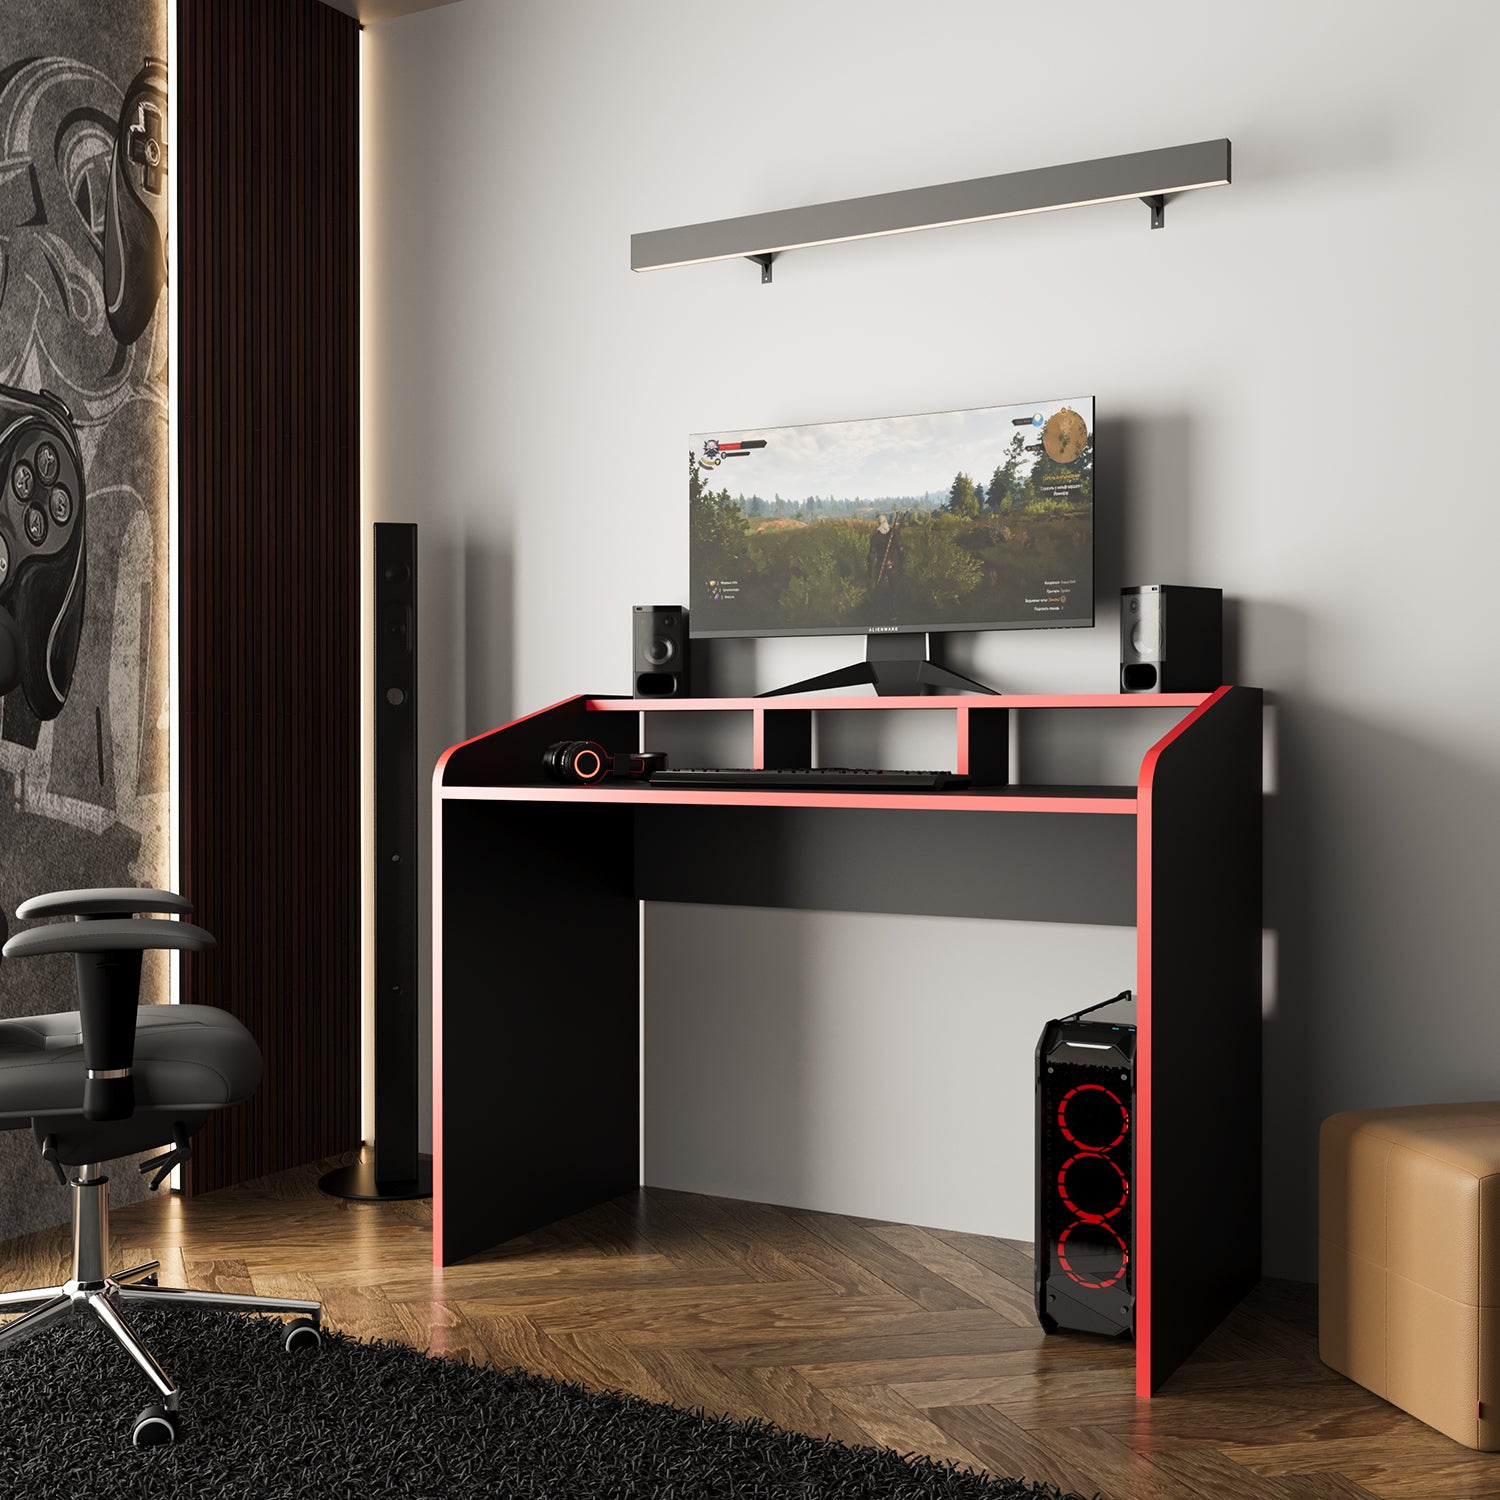 Bimossa S8280 Zuko Oyuncu Masası Siyah - Kırmızı 117 cm